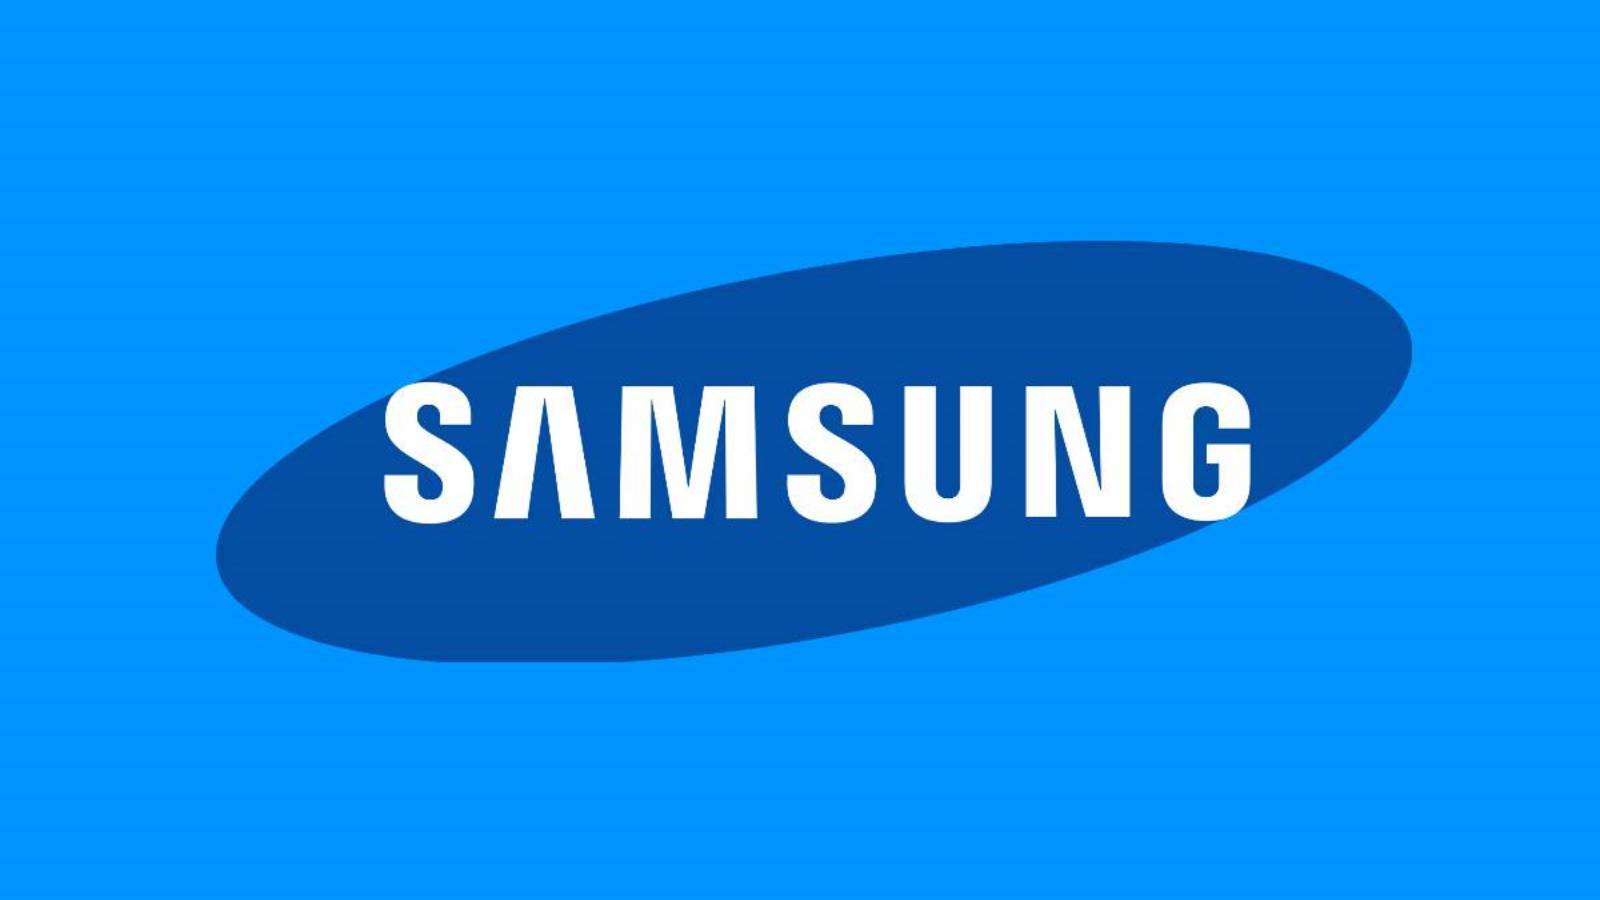 Samsung anuncia un estreno mundial extremadamente importante